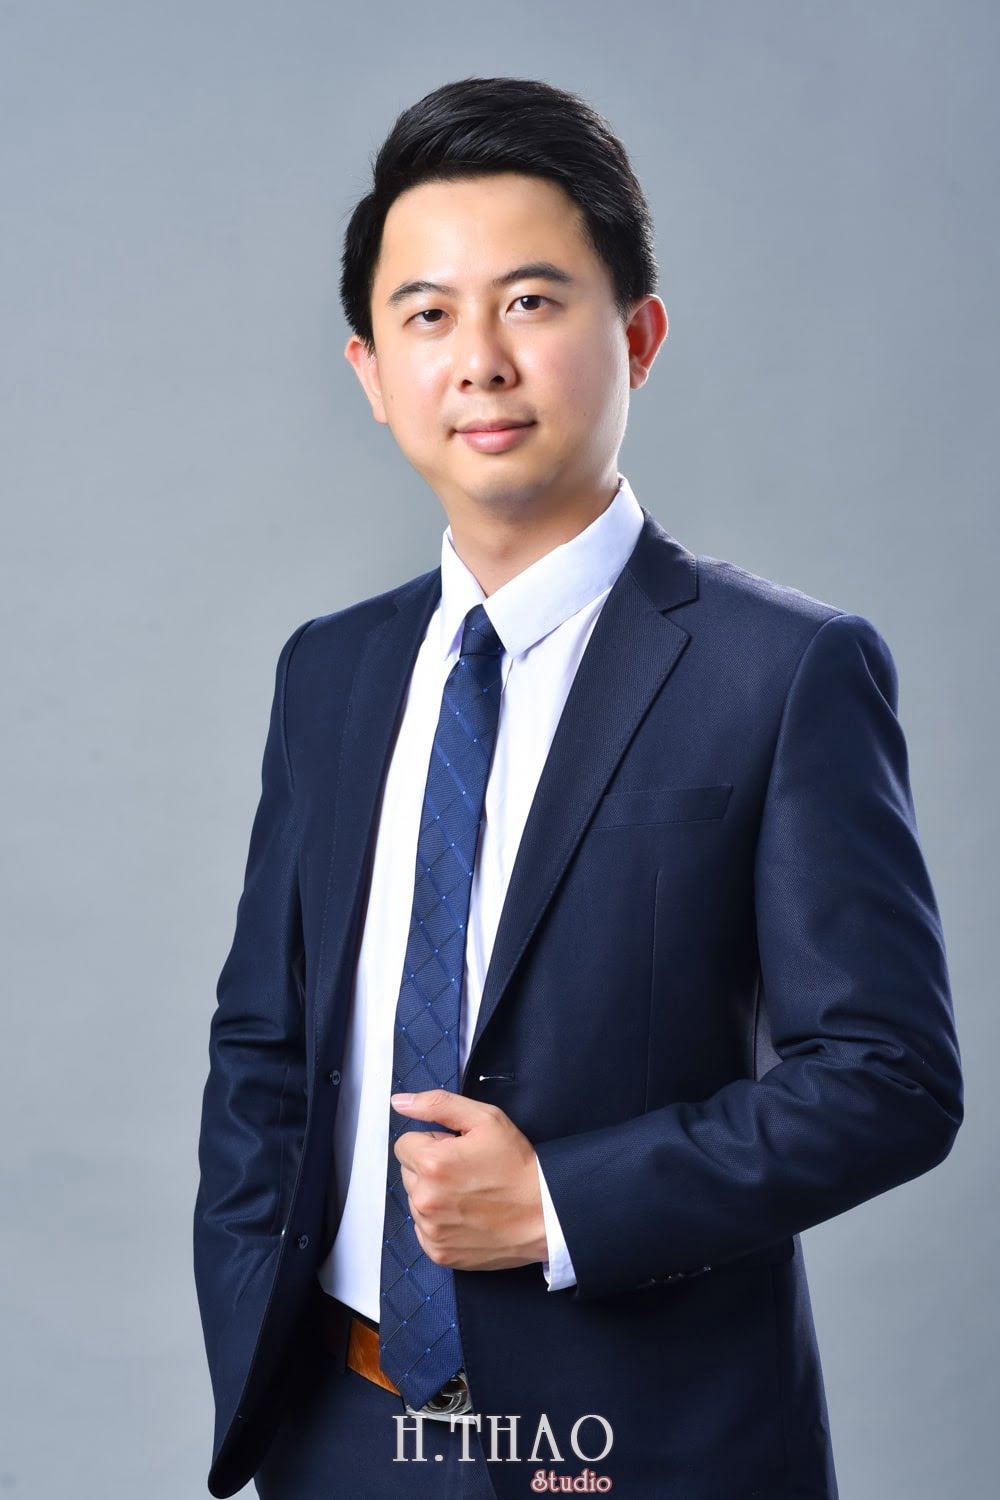 Anh profile  9 min - Tổng hợp ảnh profile nghề nghiệp bác sĩ, ngân hàng đẹp- HThao Studio